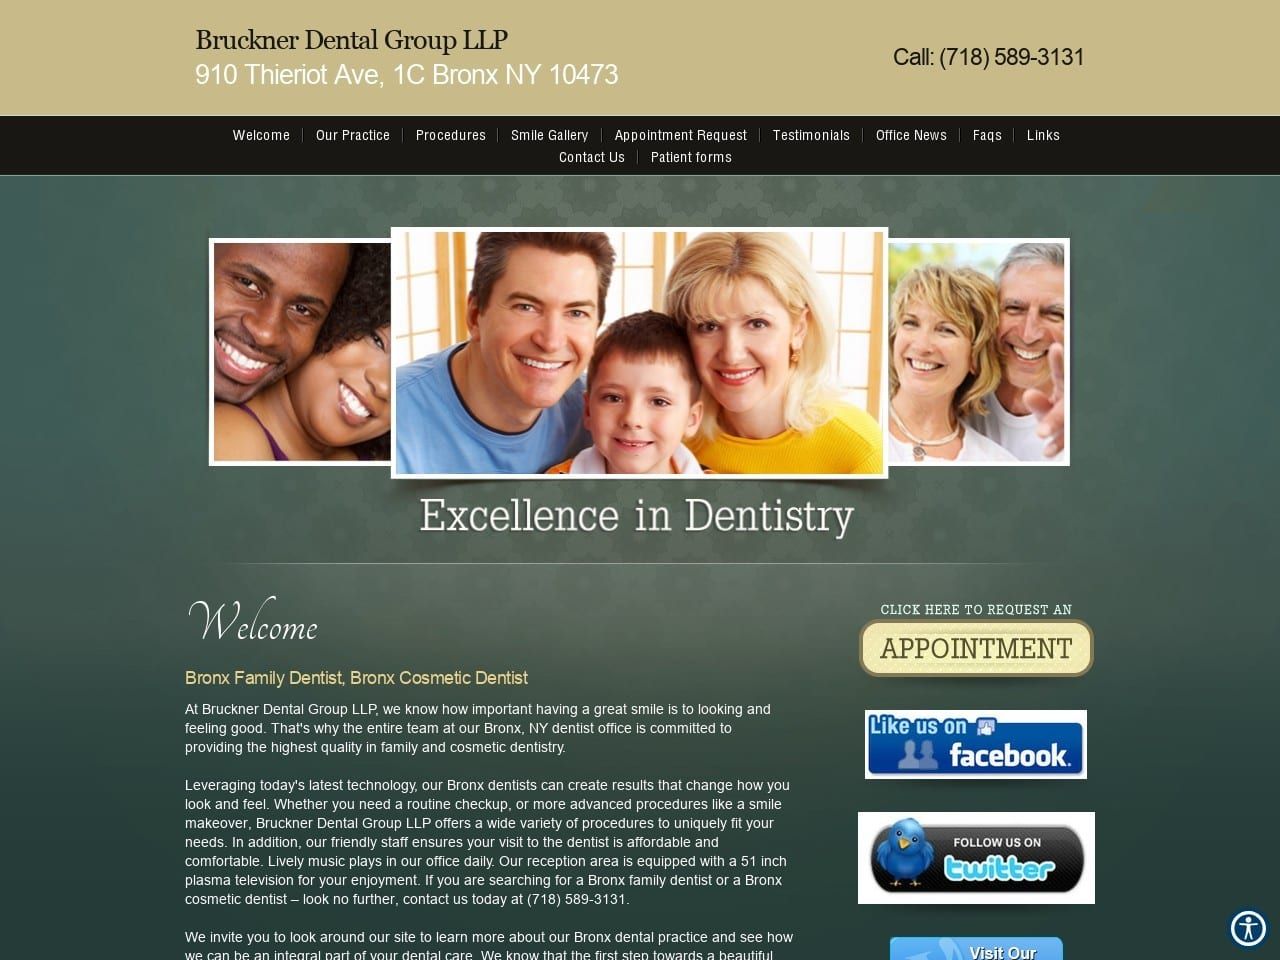 Bruckner Dental Website Screenshot from brucknerdental.com